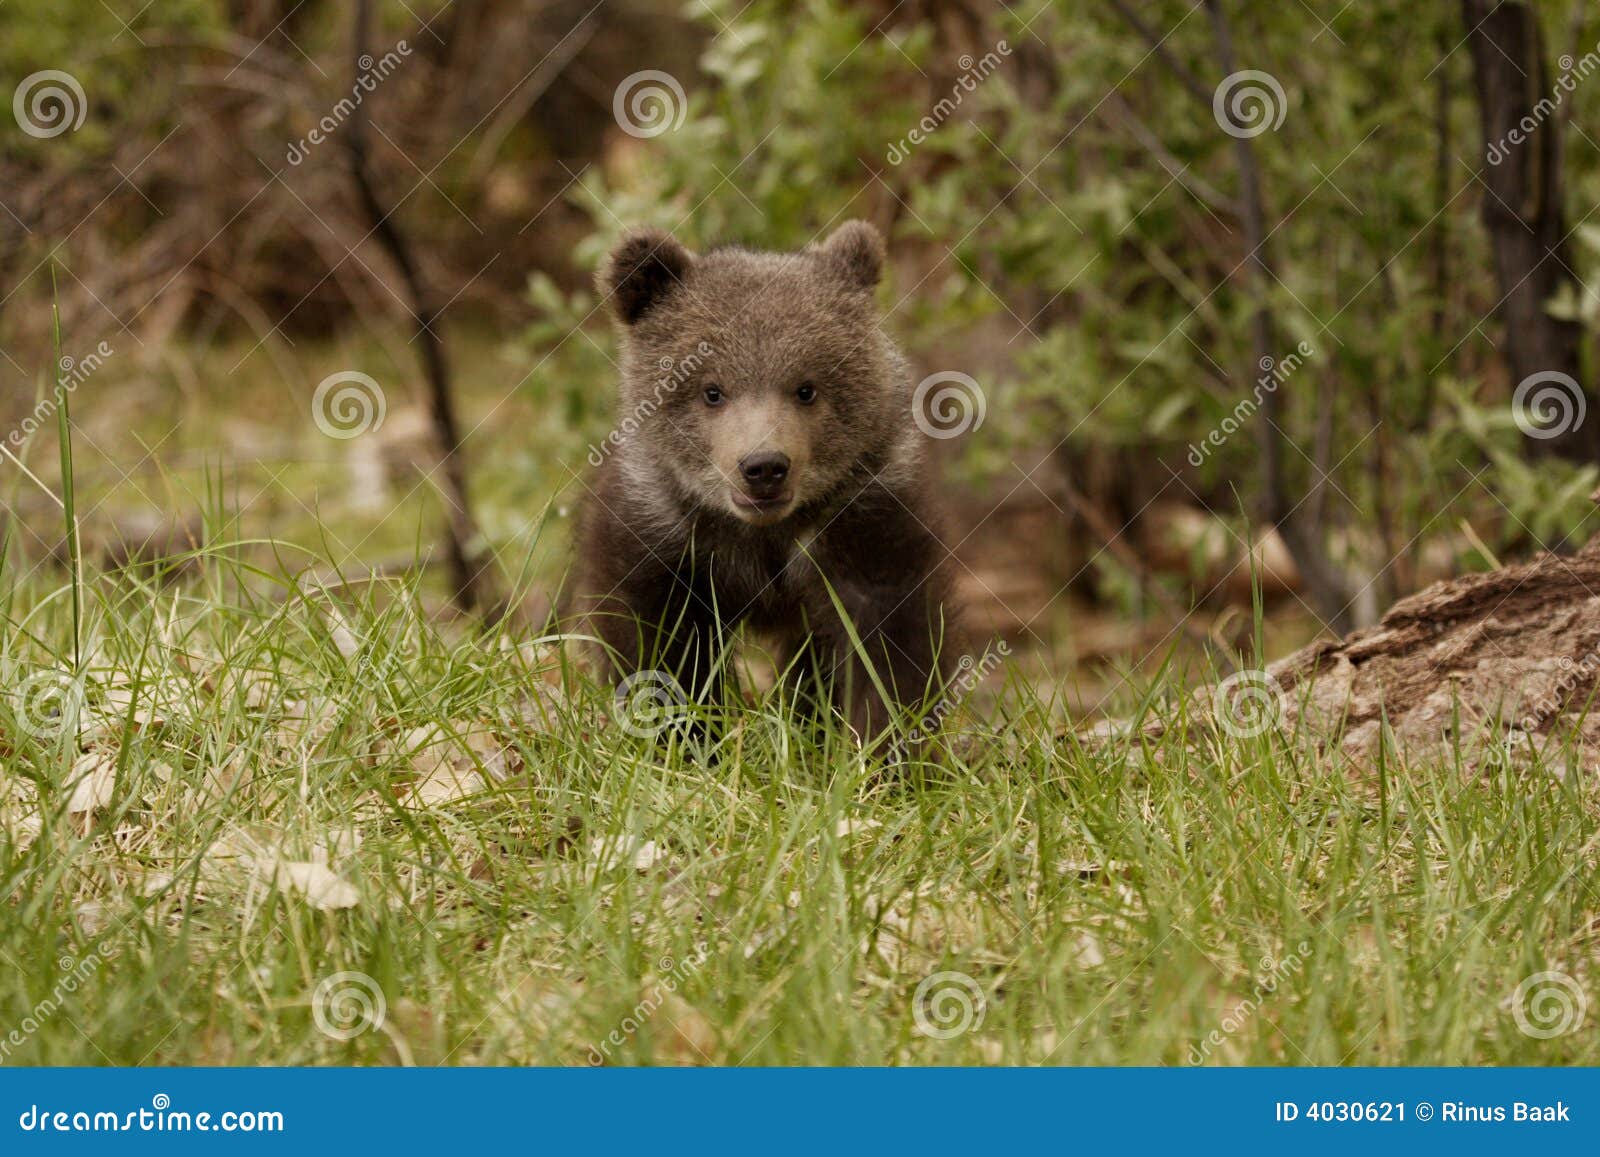 grizzly bear cub